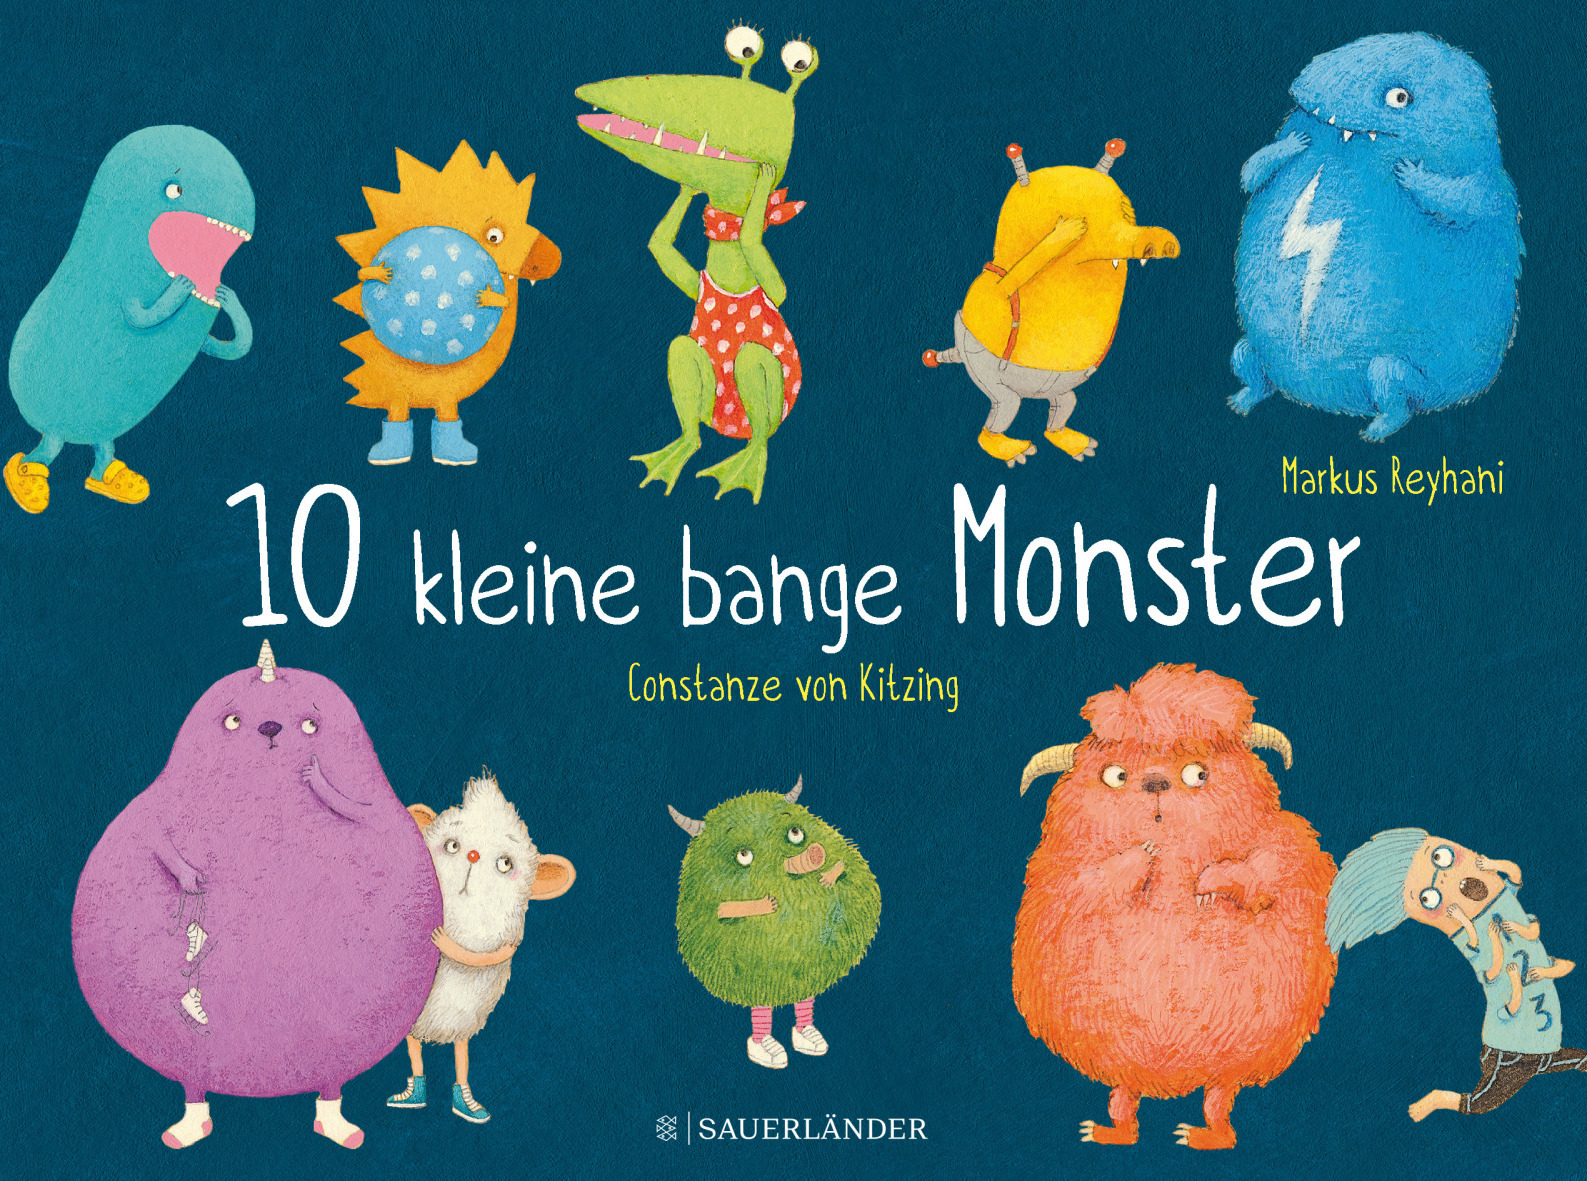 Markus Reyhani (Text) / Constanze von Kitzing (Illustration)10 kleine bange Monster